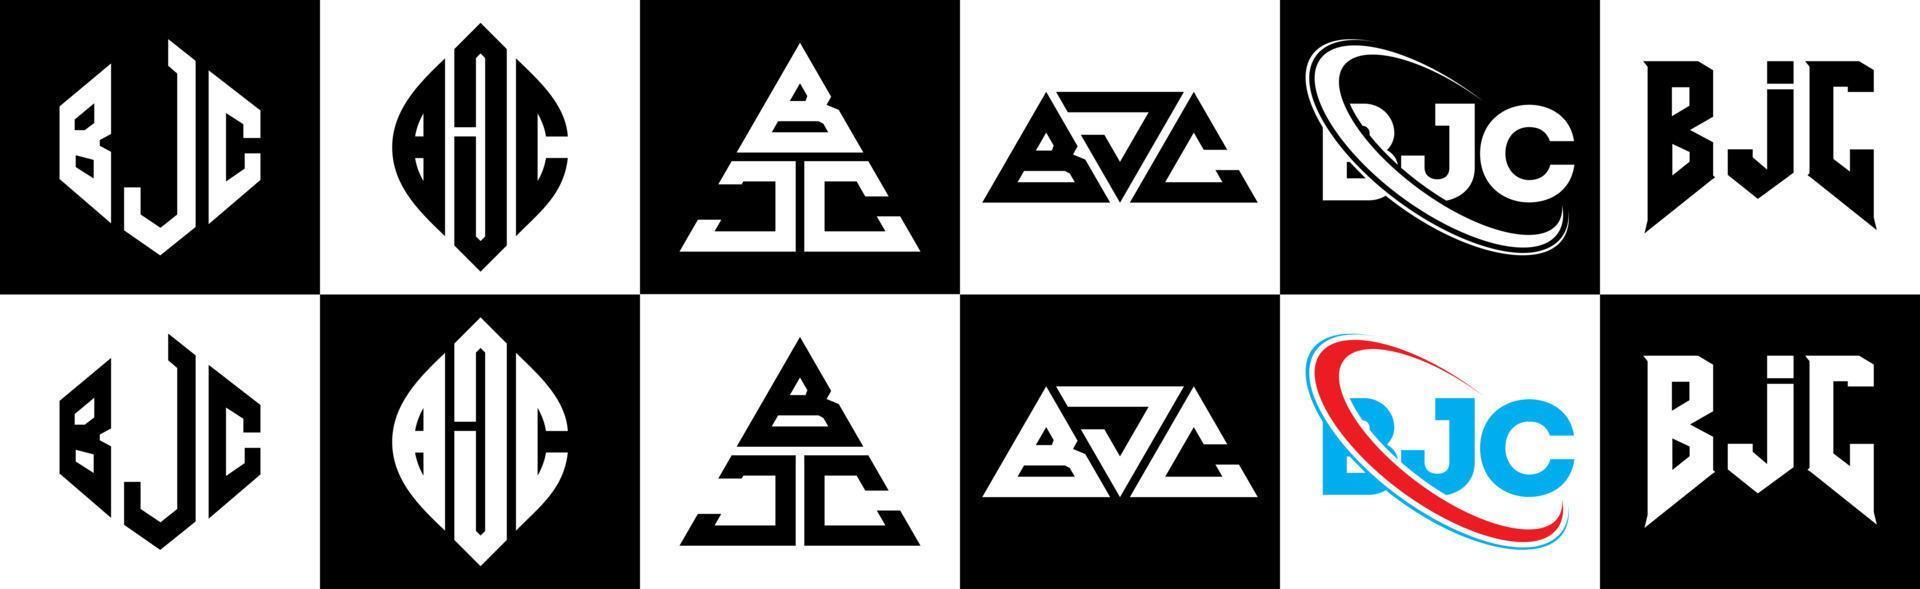 Diseño de logotipo de letra bjc en seis estilos. polígono bjc, círculo, triángulo, hexágono, estilo plano y simple con logotipo de letra de variación de color blanco y negro en una mesa de trabajo. logotipo bjc minimalista y clásico vector